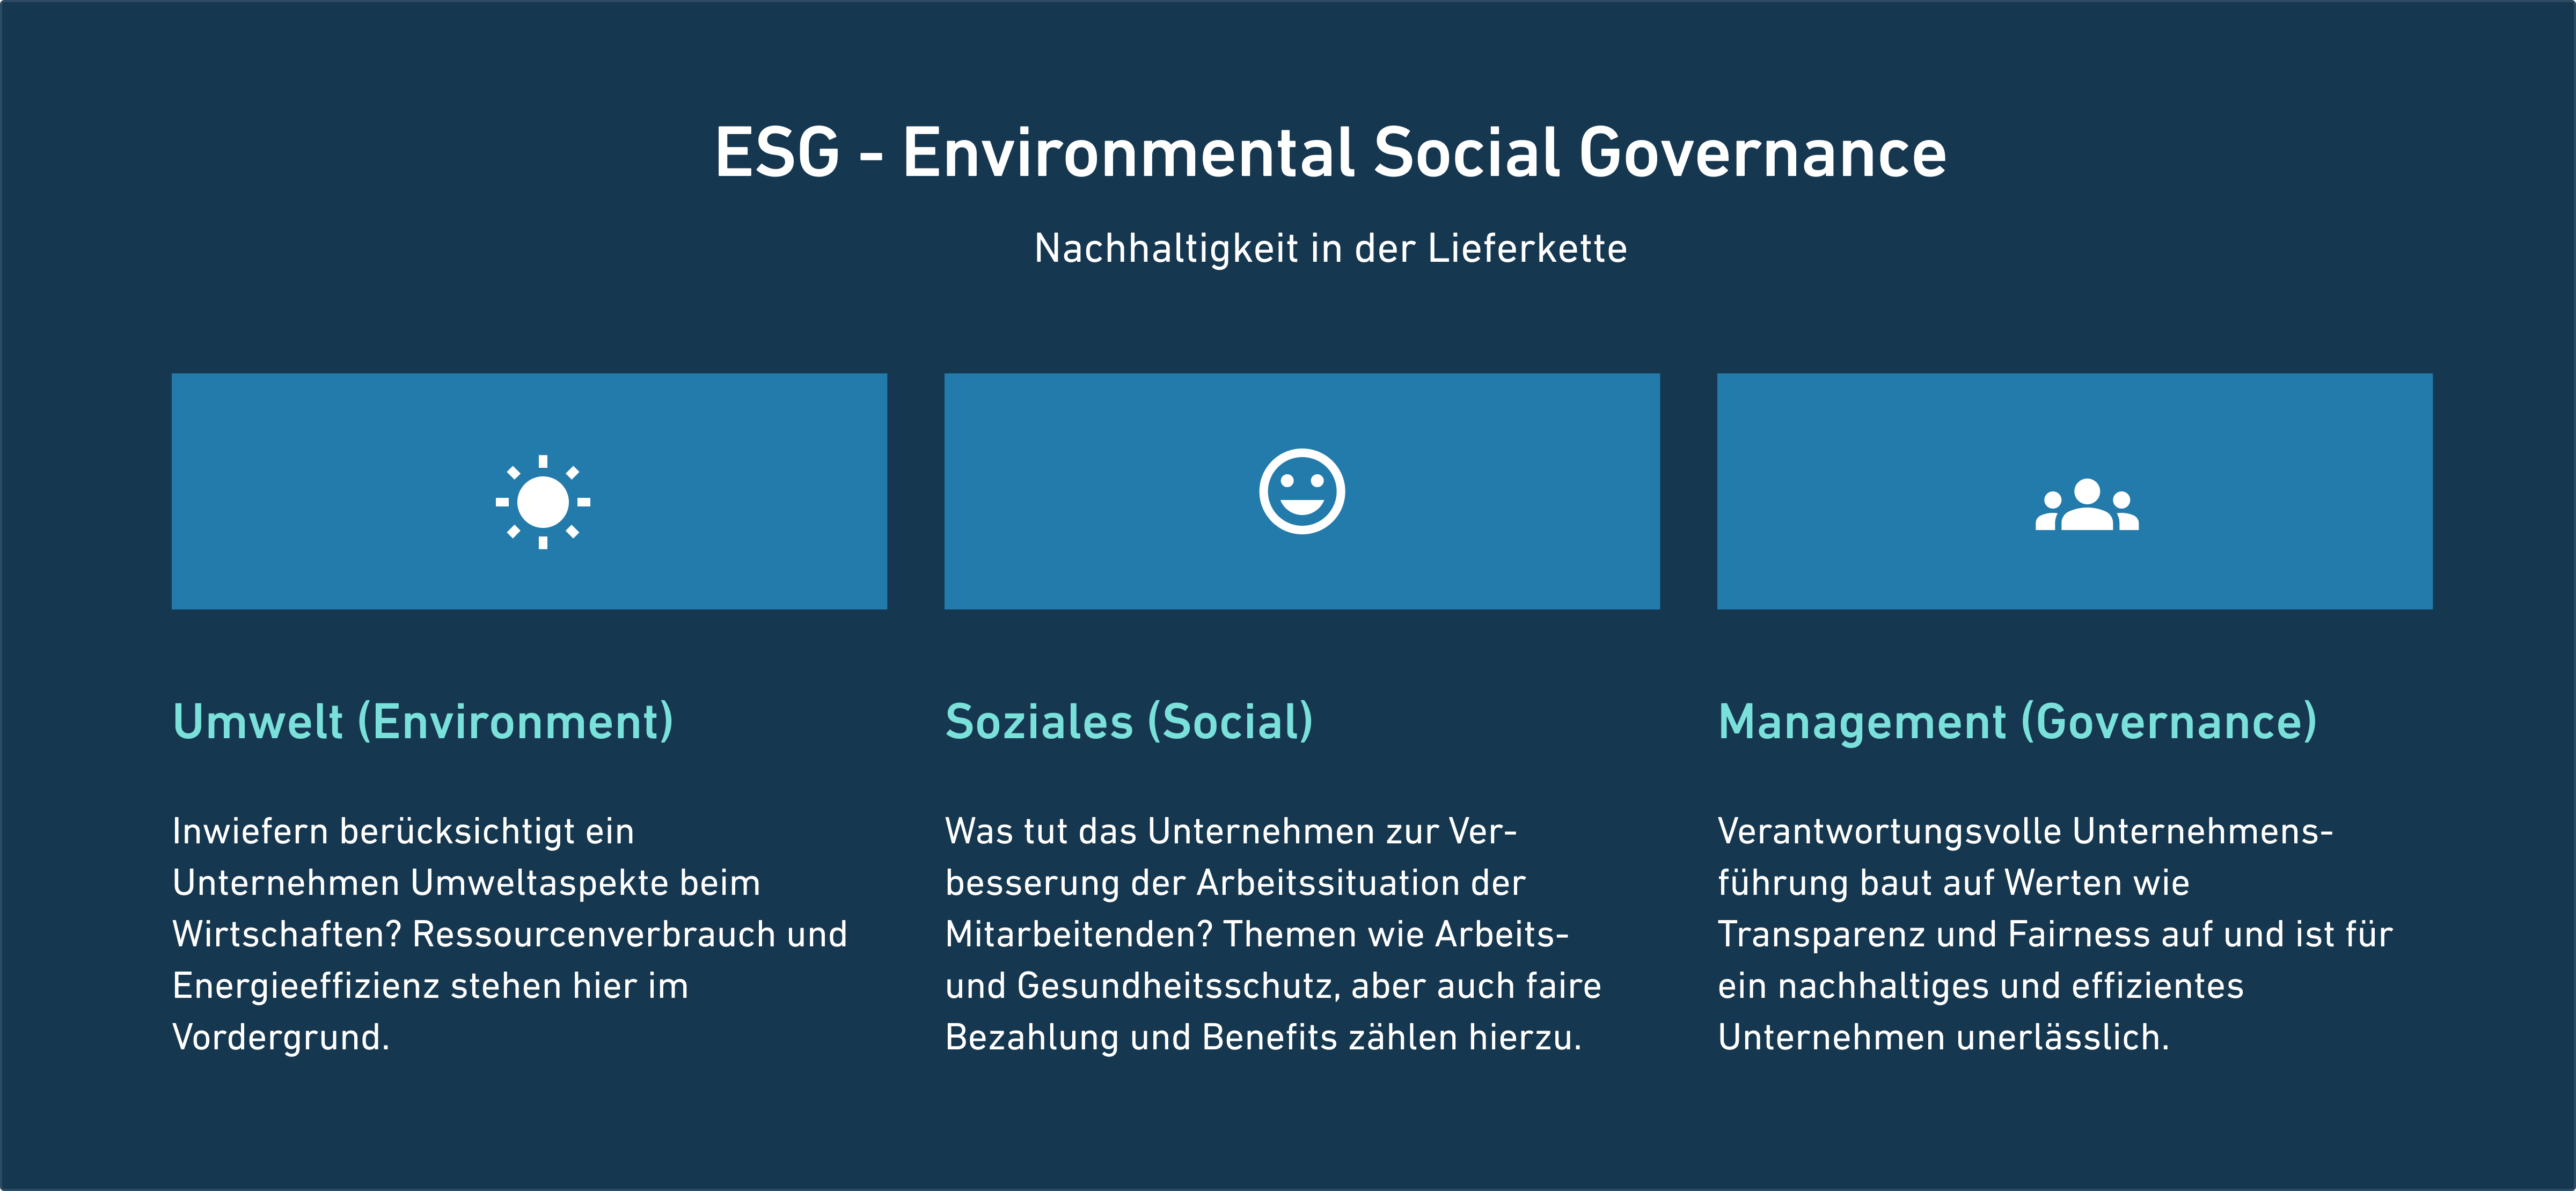 Überschrift: ESG Environmental Social Governance; Unterüberschrift: Nachhaltige Liferkette; Drei Aspekte: Umwelt, Soziales, Management